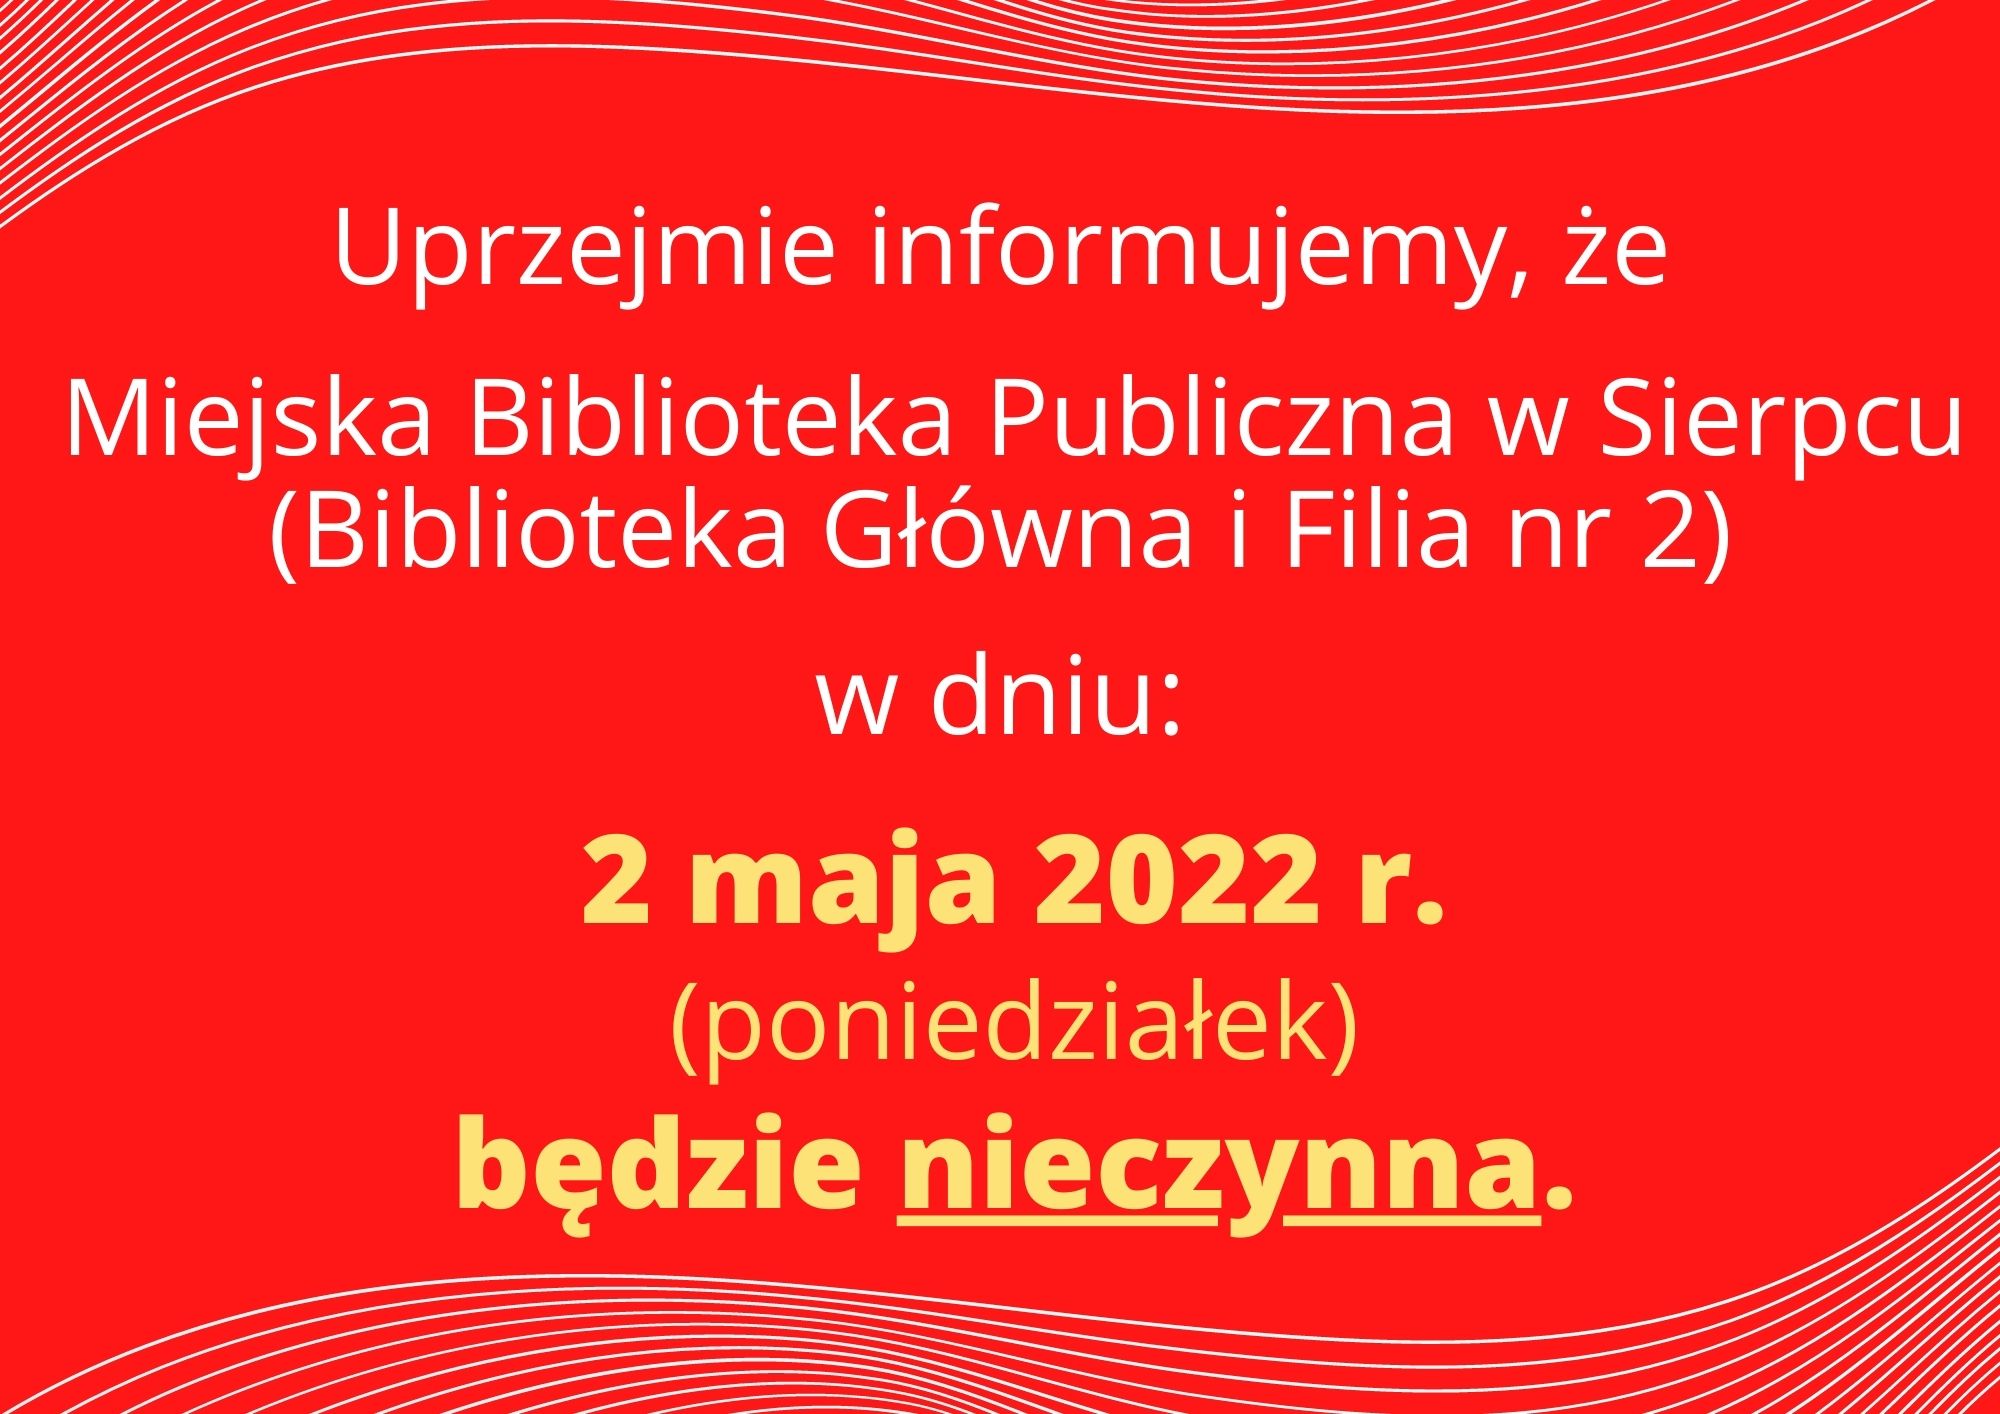 „Uprzejmie m informujemy, że Miejska Biblioteka Publiczna W Sierpcu (Biblioteka Główna i Filia nr 2) W dniu: 2 maja 2022 r. (poniedziałek) będzie nieczynna.”